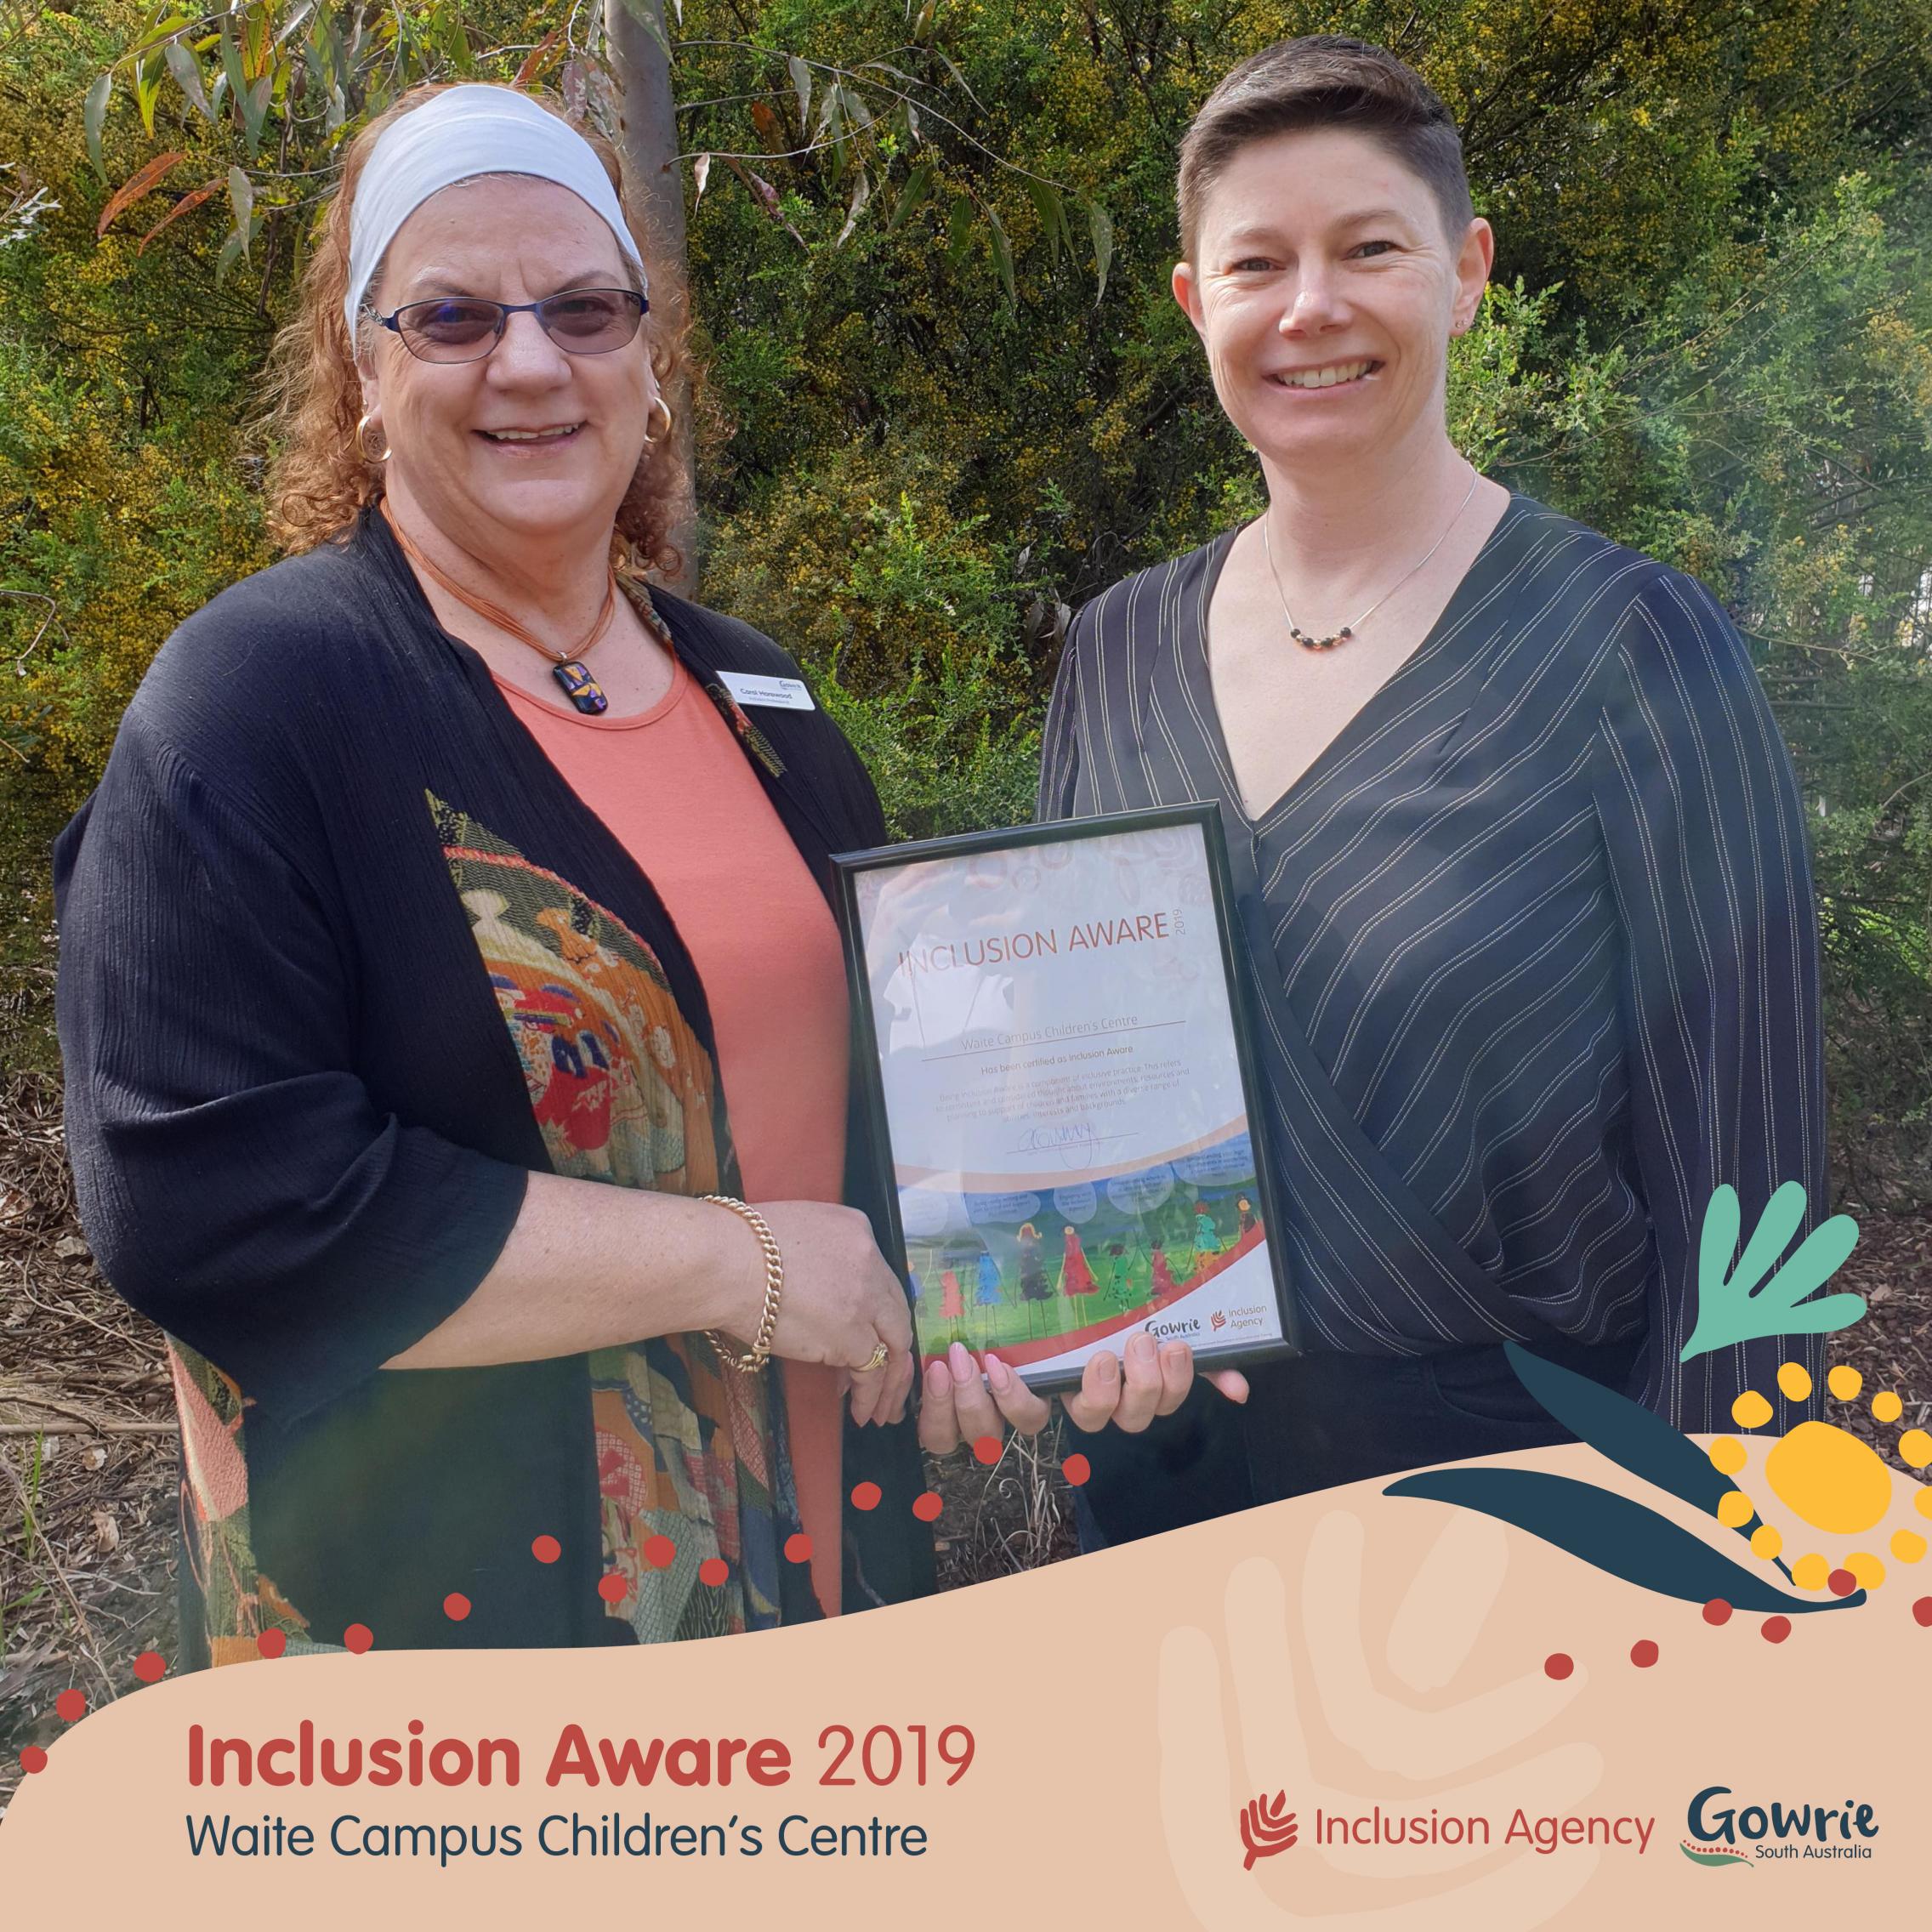 Inclusion aware 2019